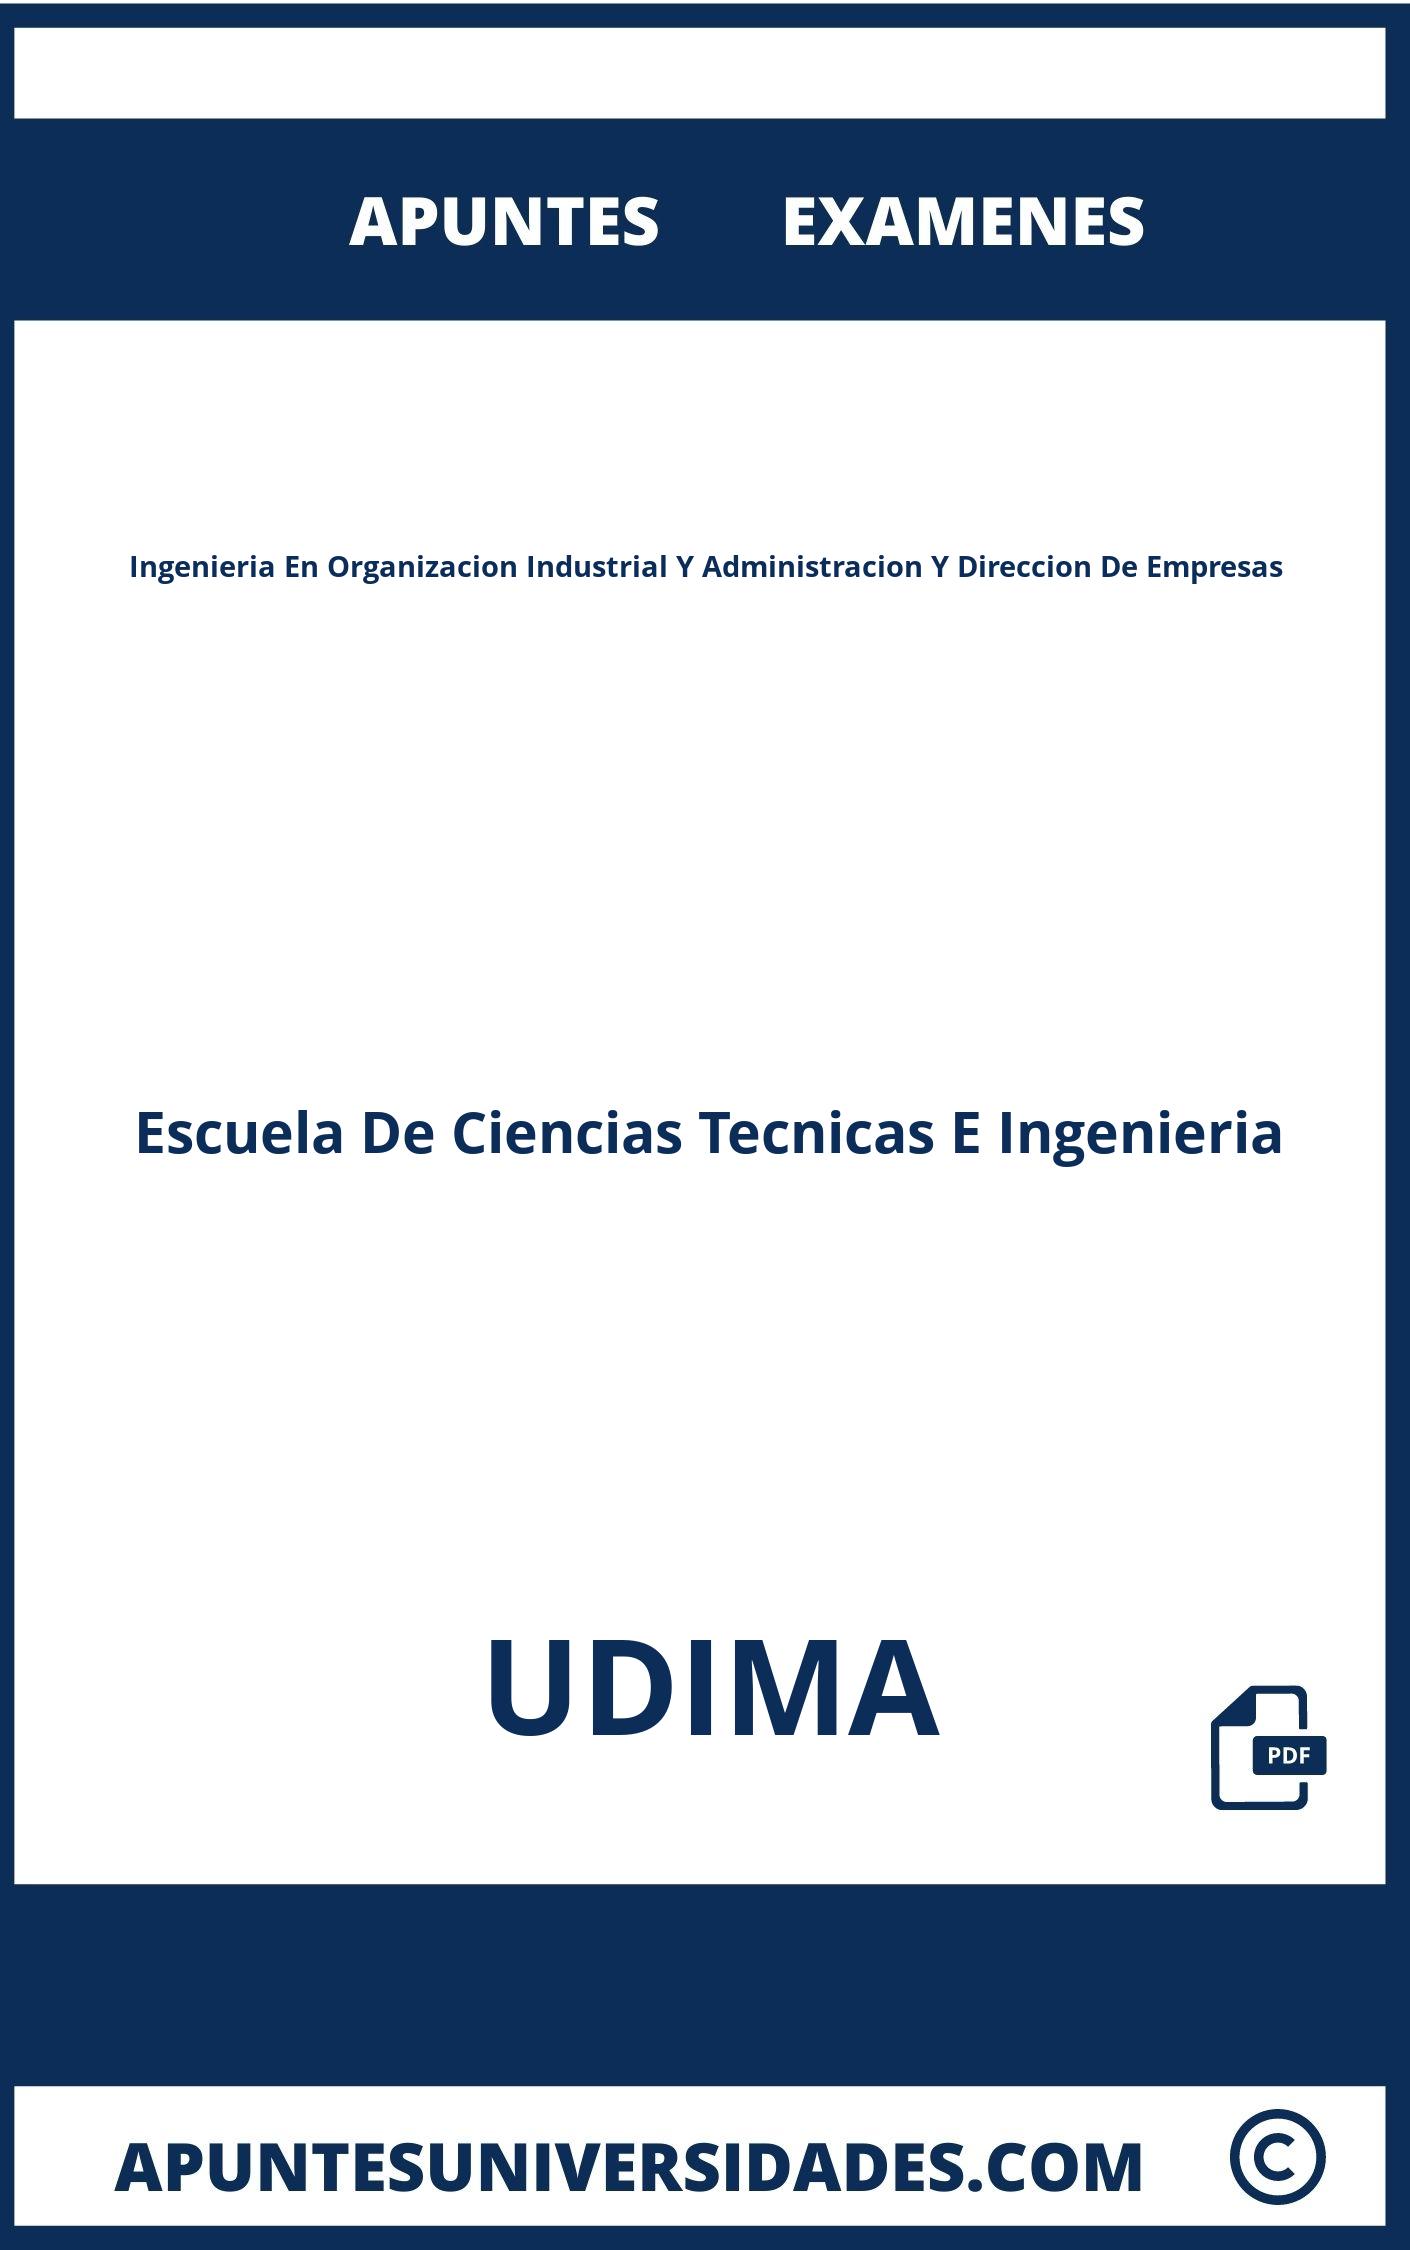 Apuntes Examenes Ingenieria En Organizacion Industrial Y Administracion Y Direccion De Empresas UDIMA